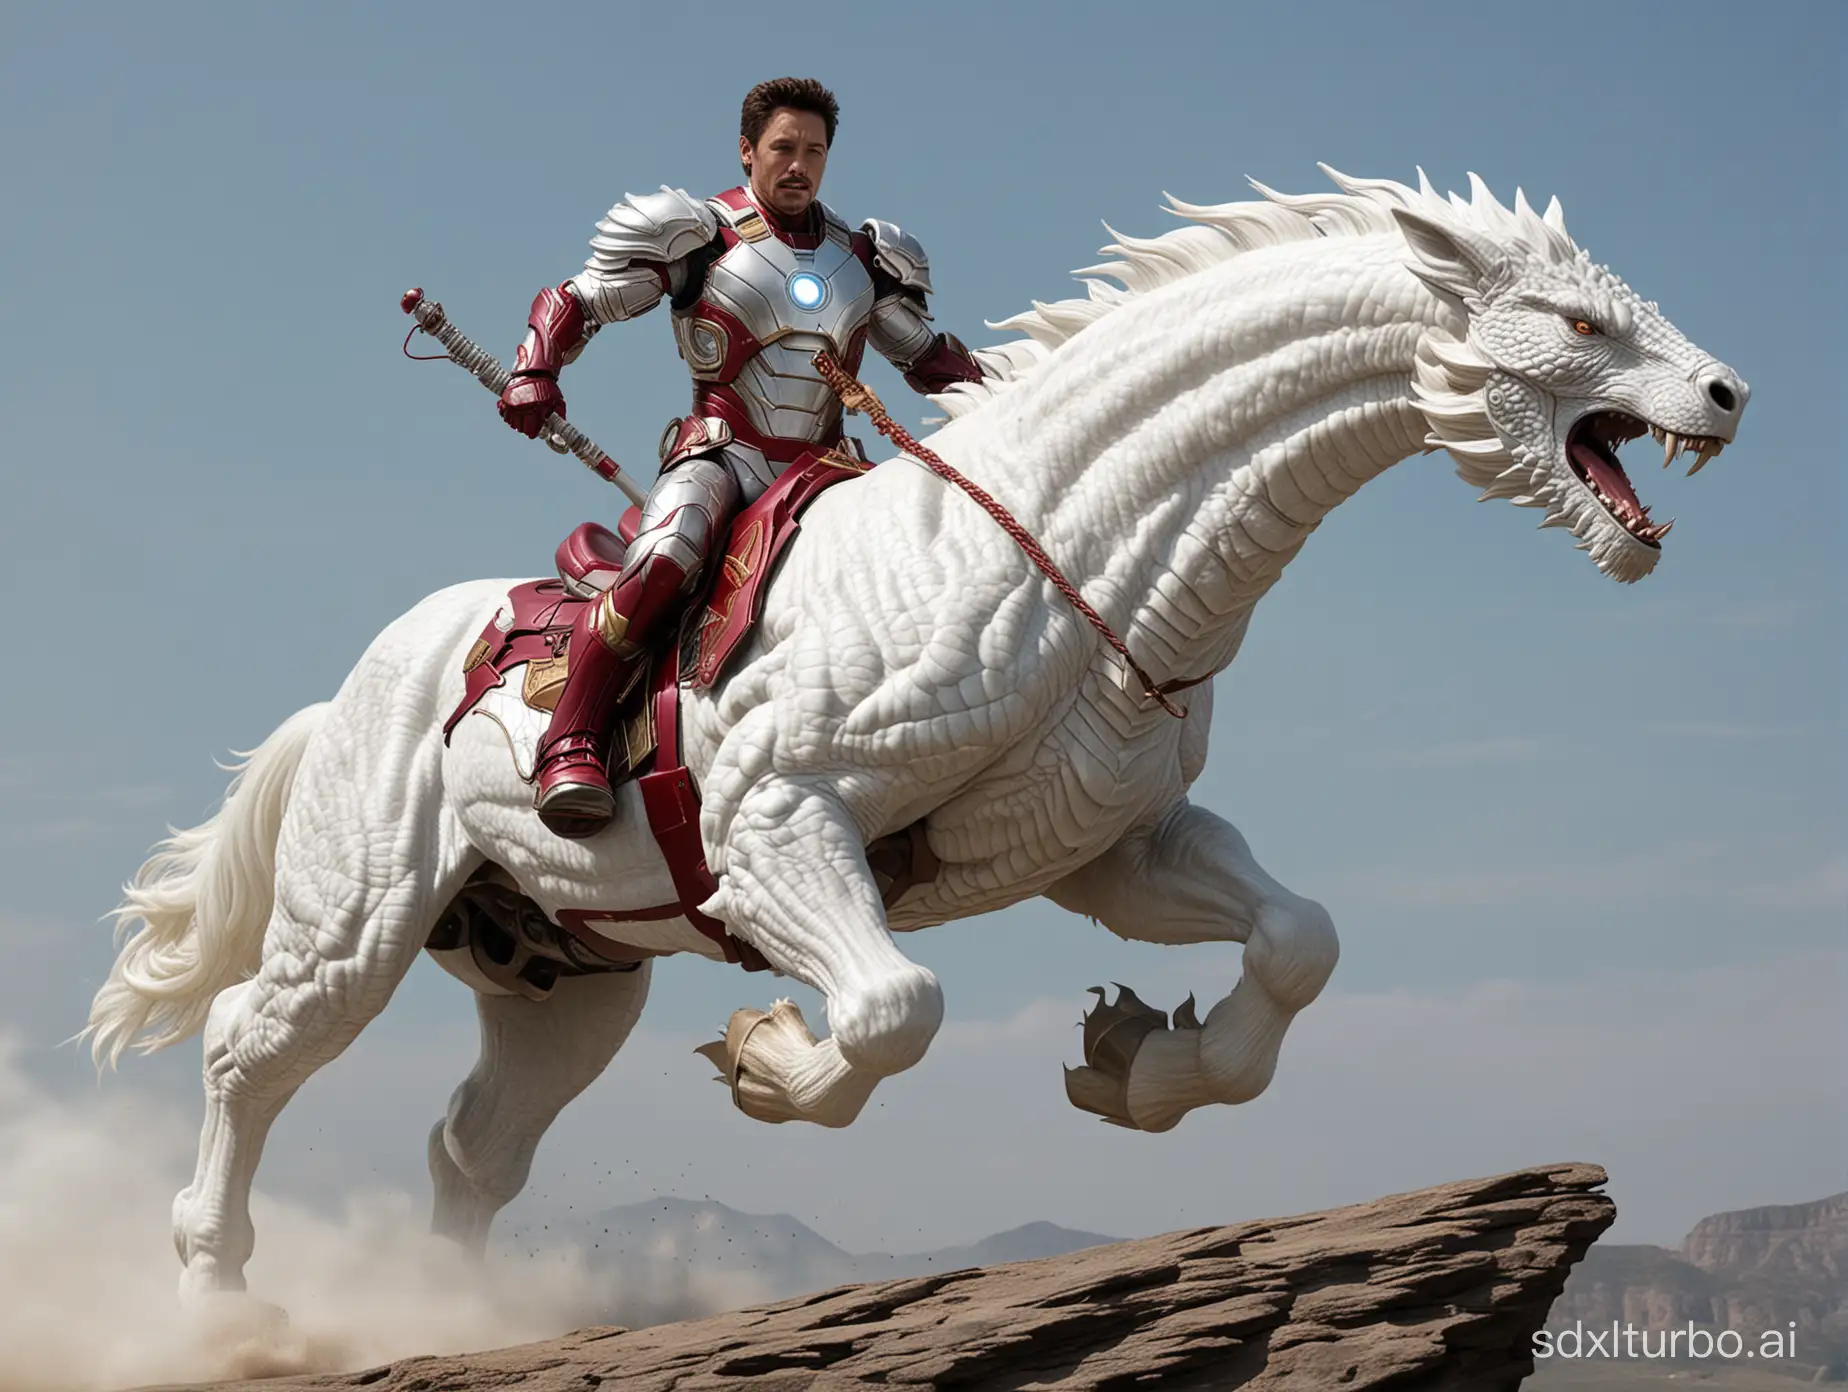 Iron-Man-Riding-a-White-Dragon-Horse-Epic-Marvel-Superhero-Fantasy-Art